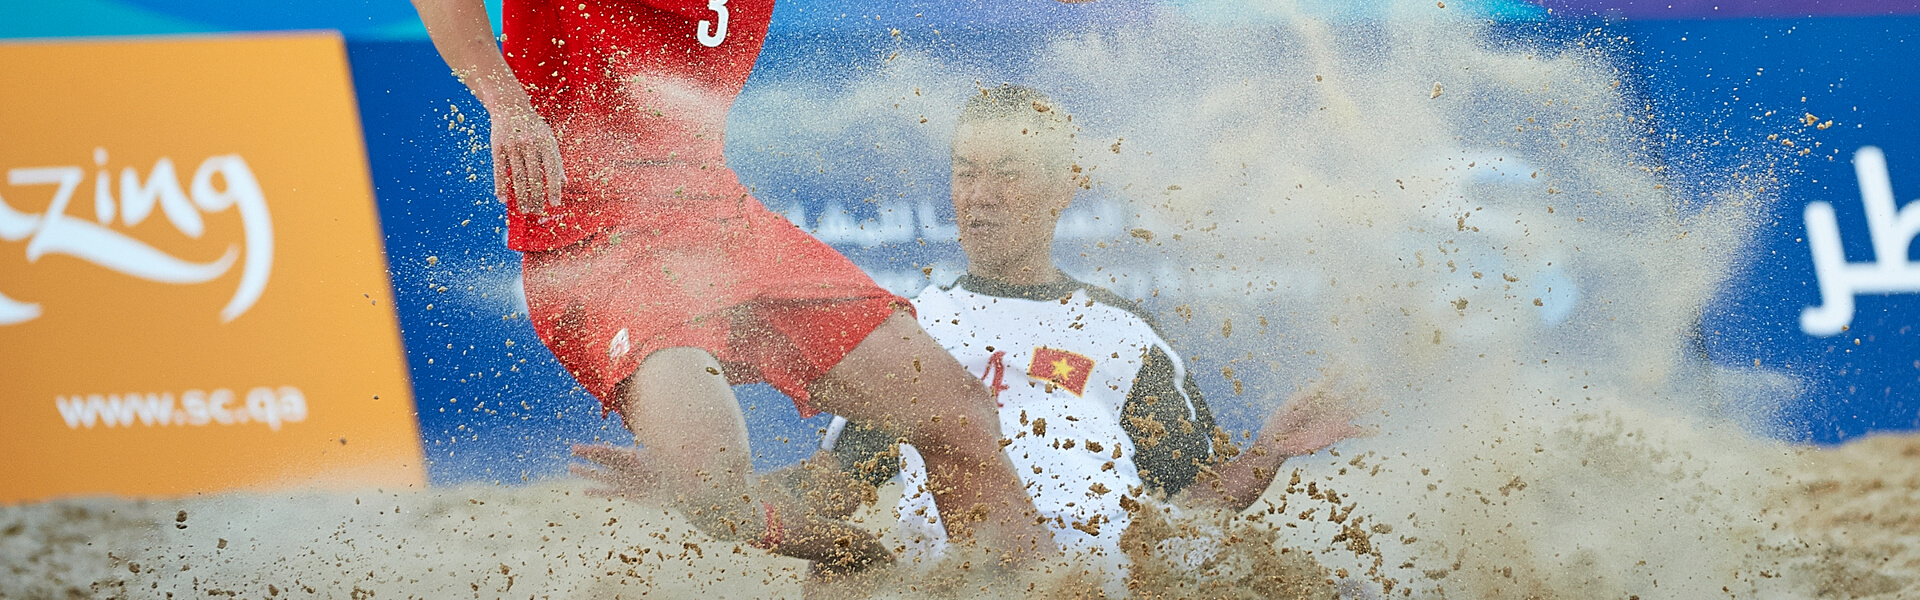 Porto Canal - Mundial de Futebol de Praia 2015